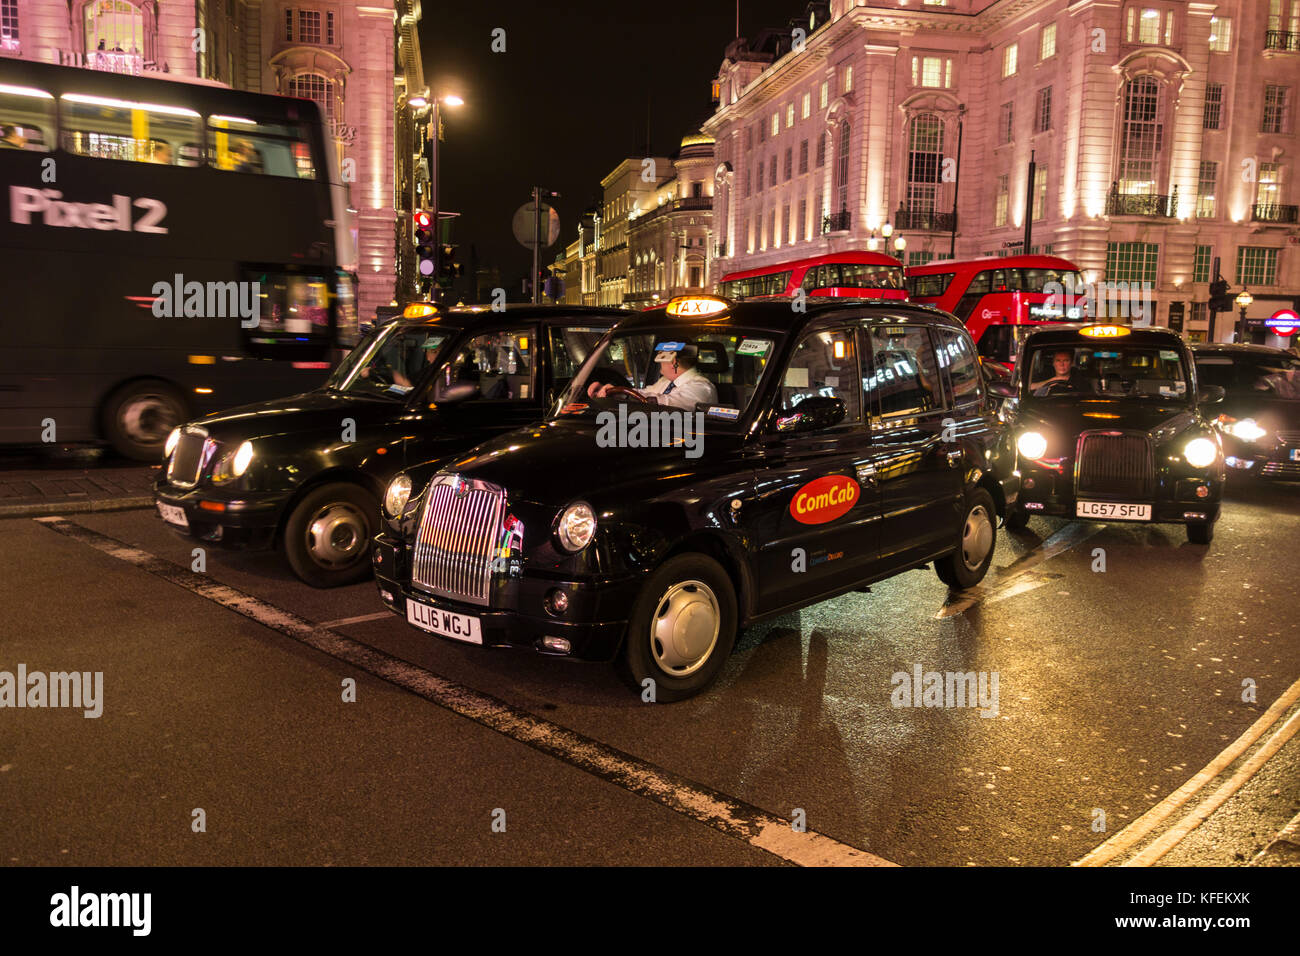 Schwarze Londoner Taxis warten auf die Ampelwechsel an einem überfüllten Piccadilly Circus, London, England, Großbritannien Stockfoto